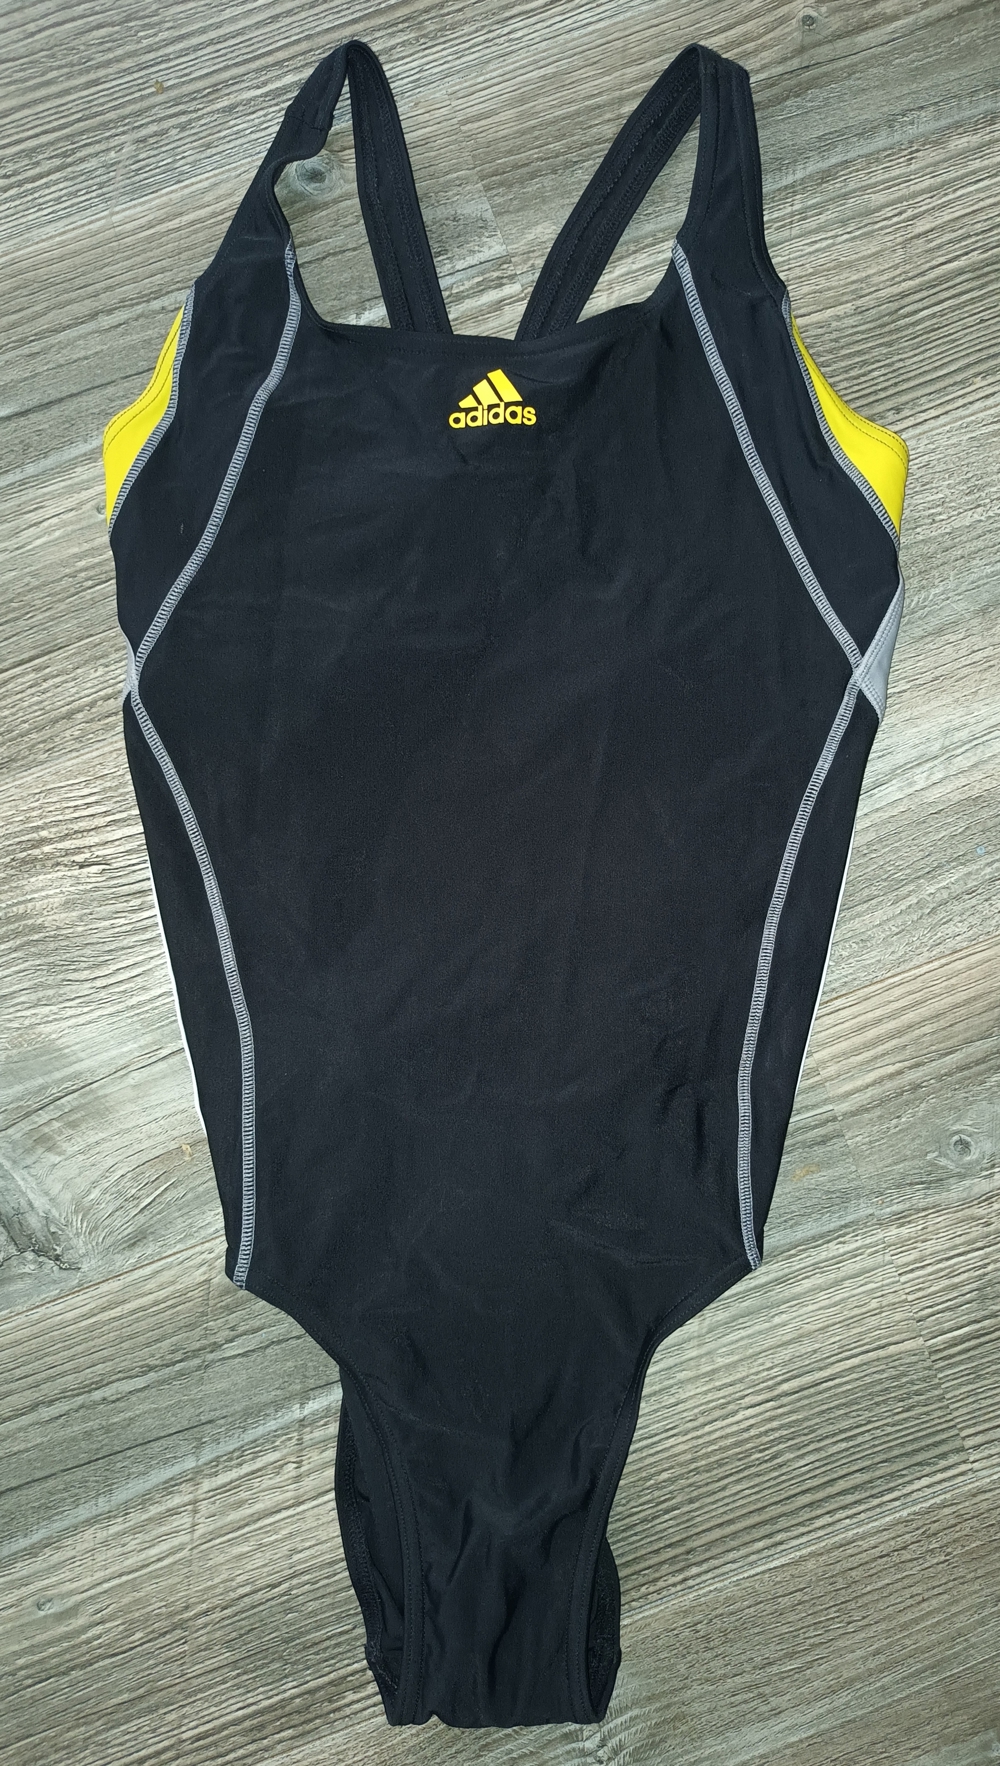 NEU! ADIDAS Sport Athlethic Badeanzug Gr. 38 176 S M Damen schwarz neongelb grau weiße Streifen 